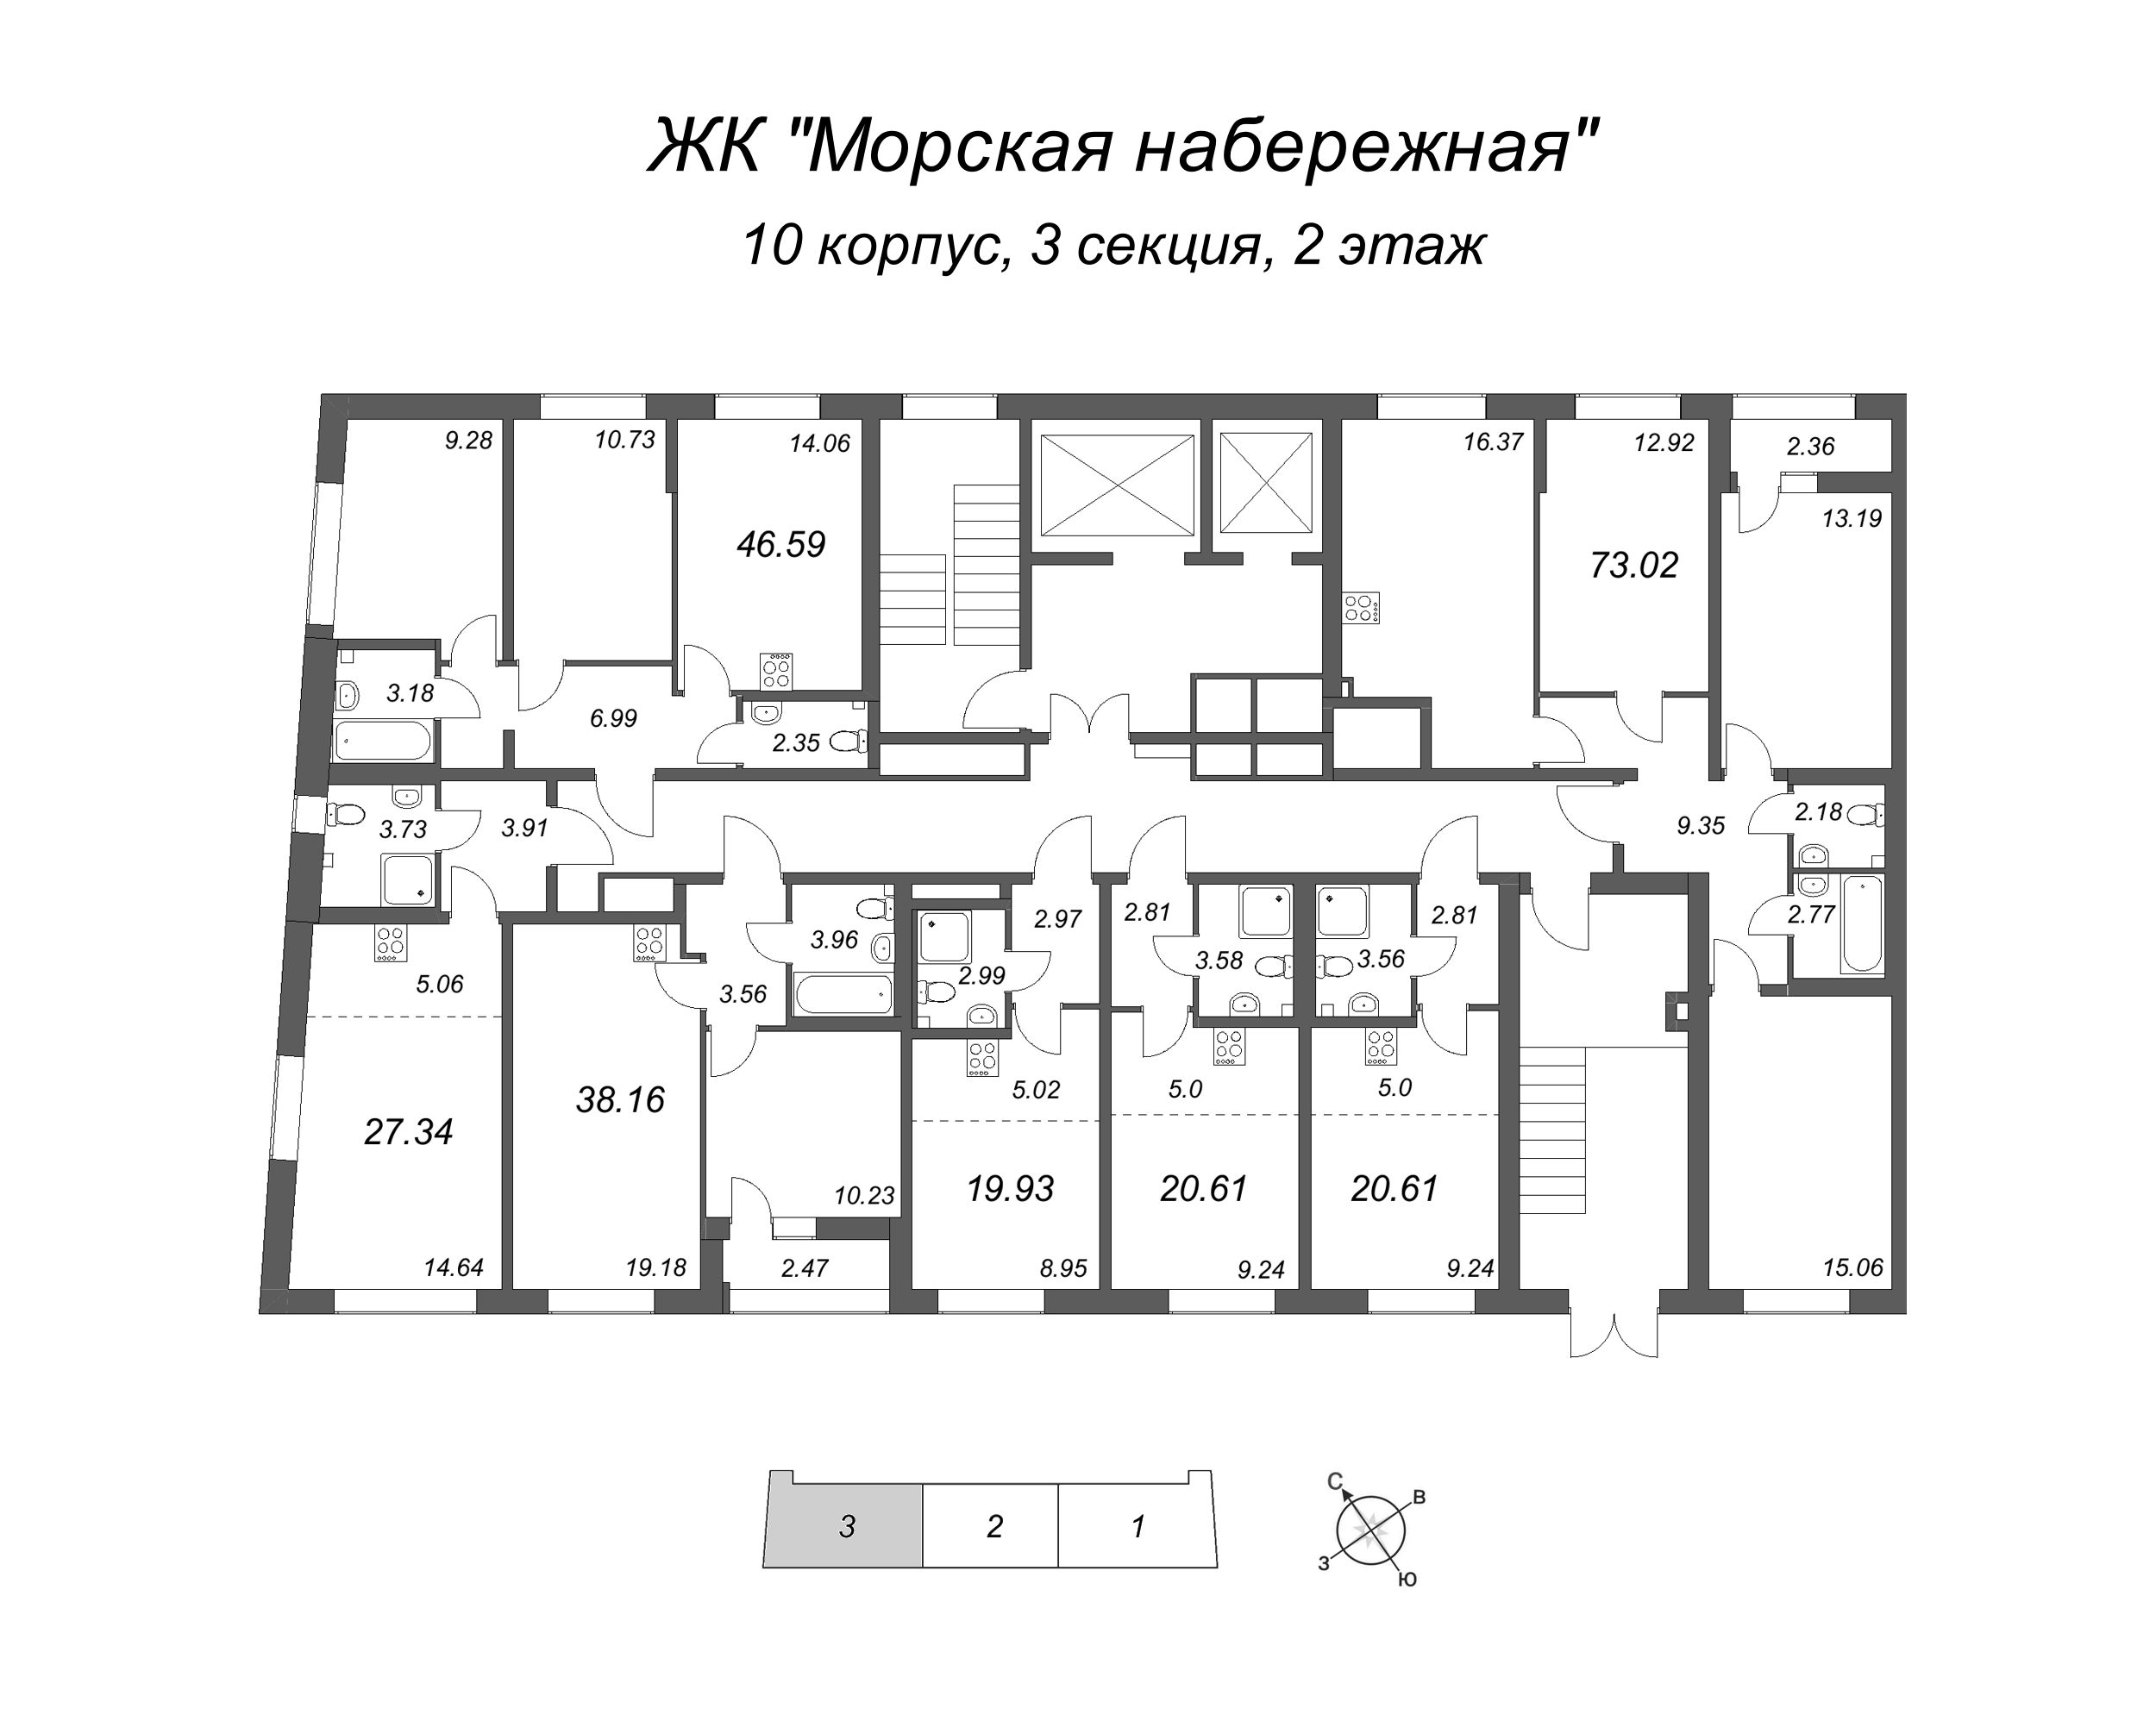 4-комнатная (Евро) квартира, 73.02 м² в ЖК "Морская набережная" - планировка этажа